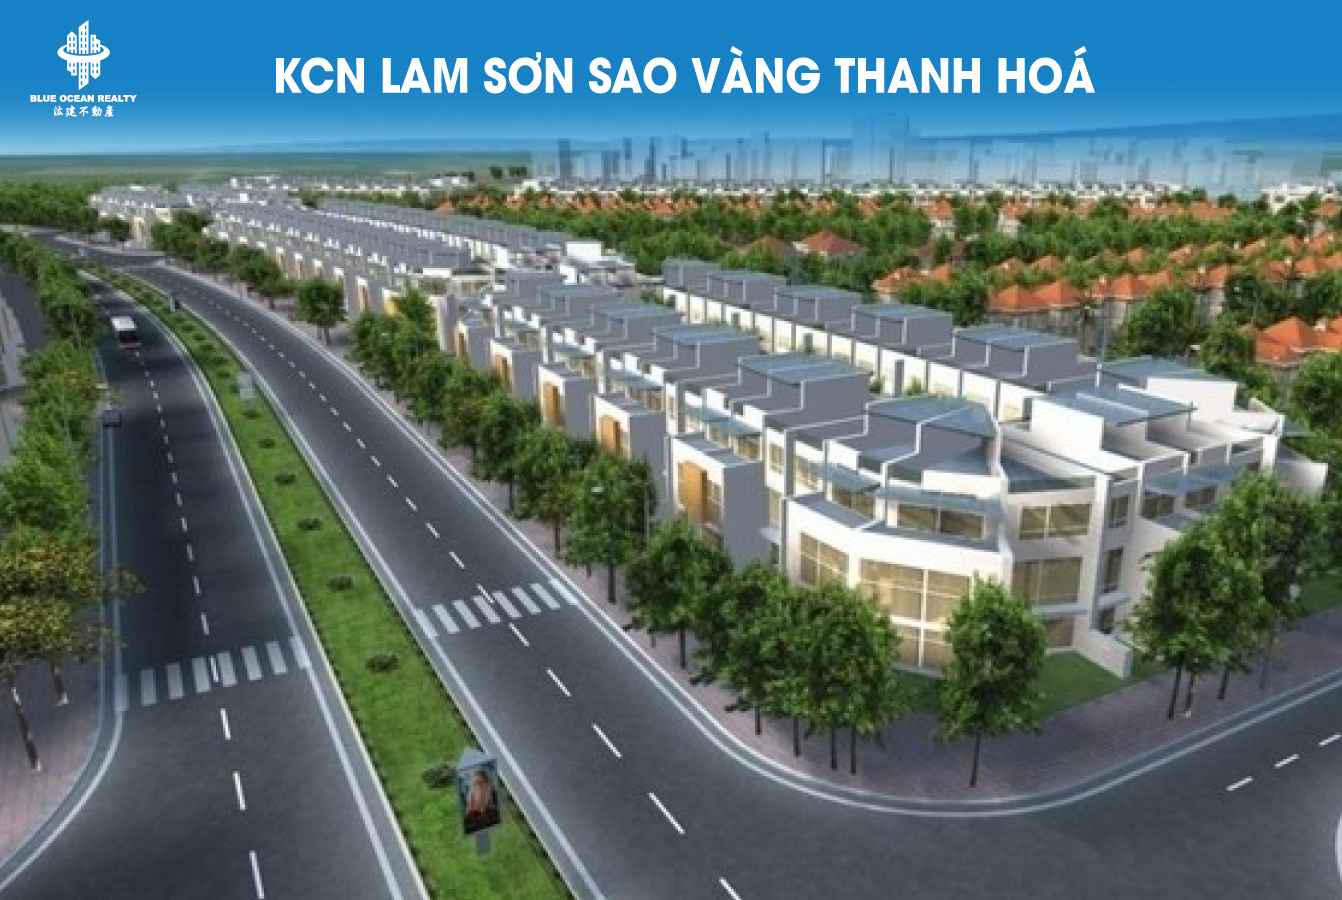 Khu công nghiệp Lam Sơn Sao Vàng Thanh Hoá